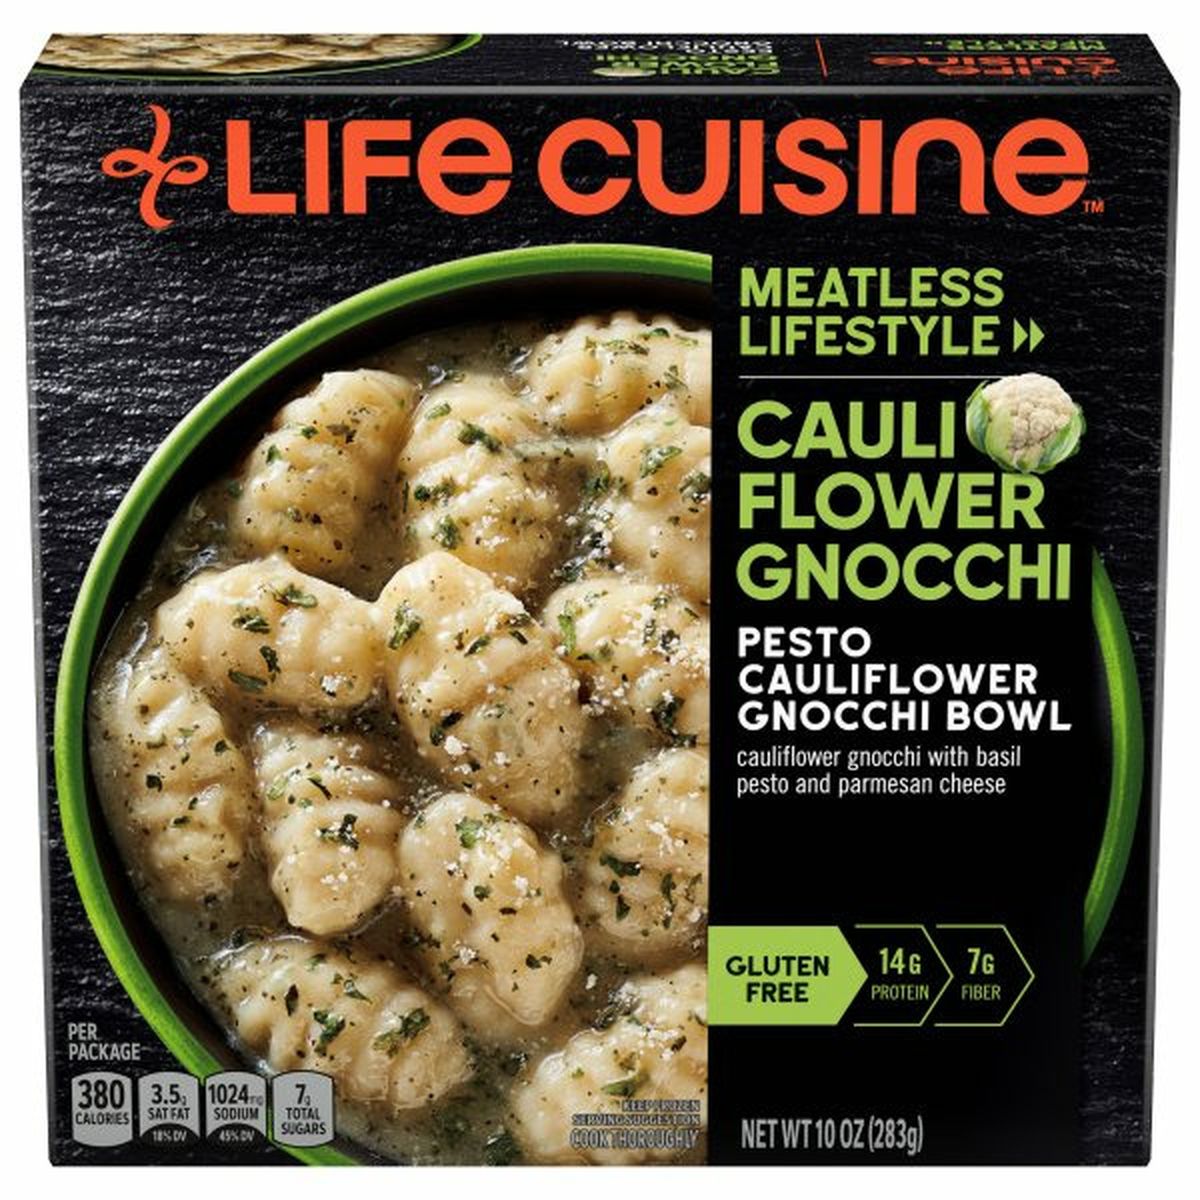 Calories in Lean Cuisine Cauliflower Gnocchi Bowl, Pesto